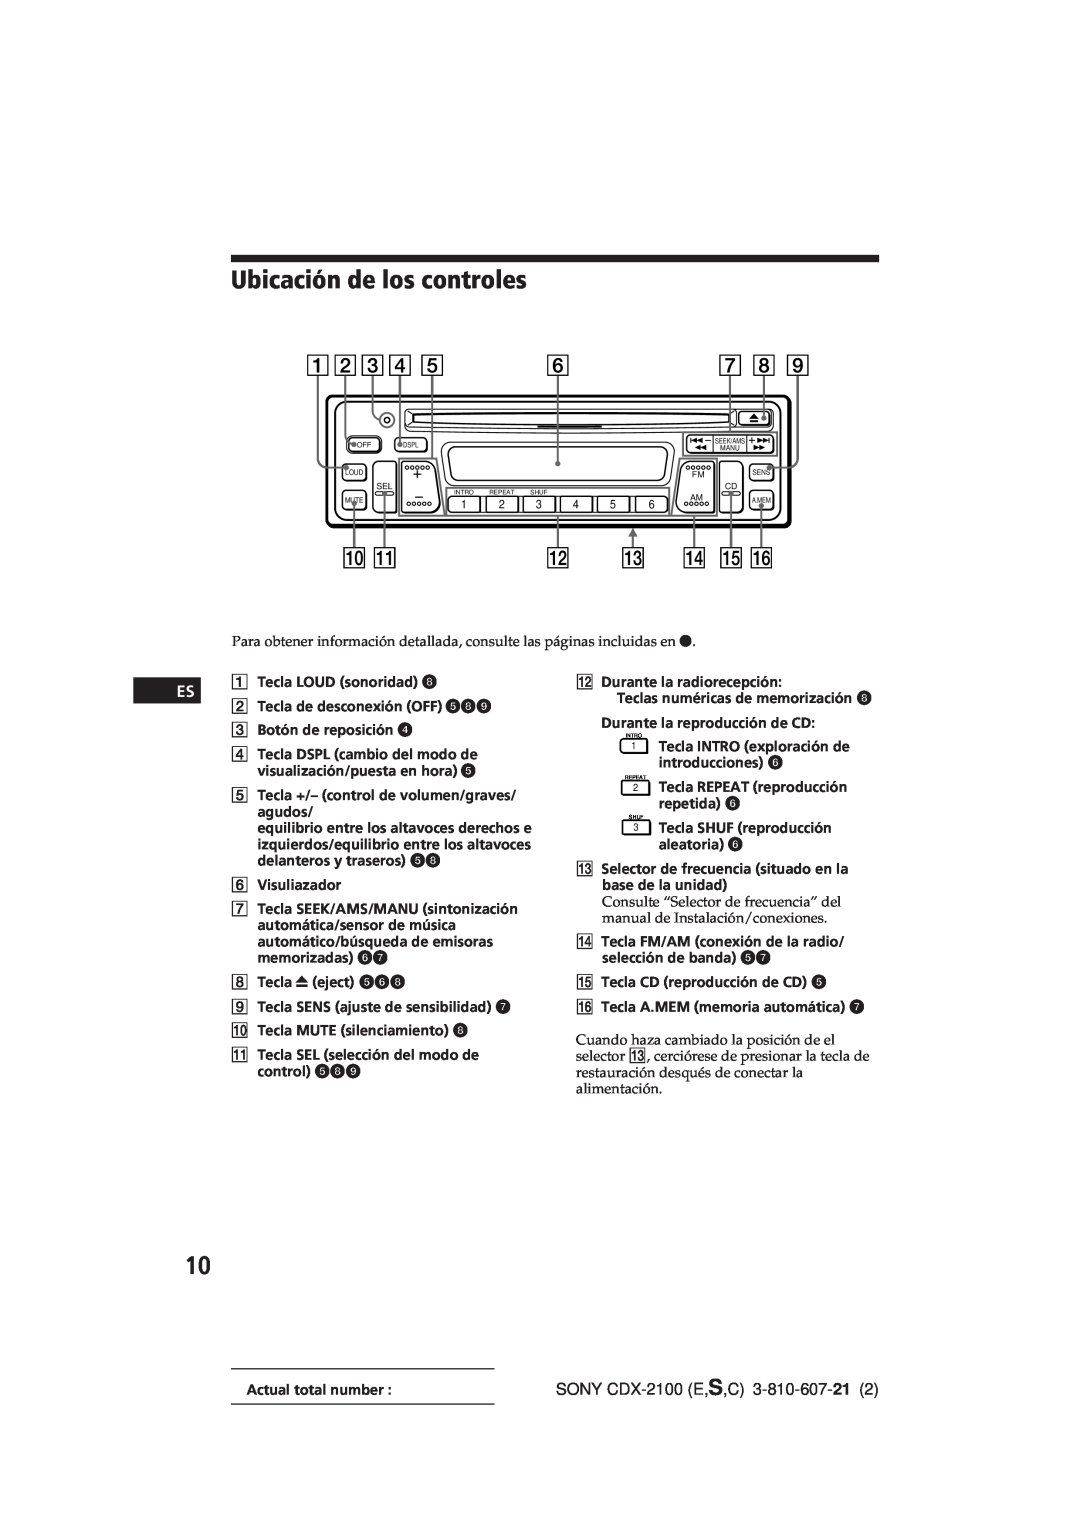 Sony manual Ubicación de los controles, SONY CDX-2100E,S,C 